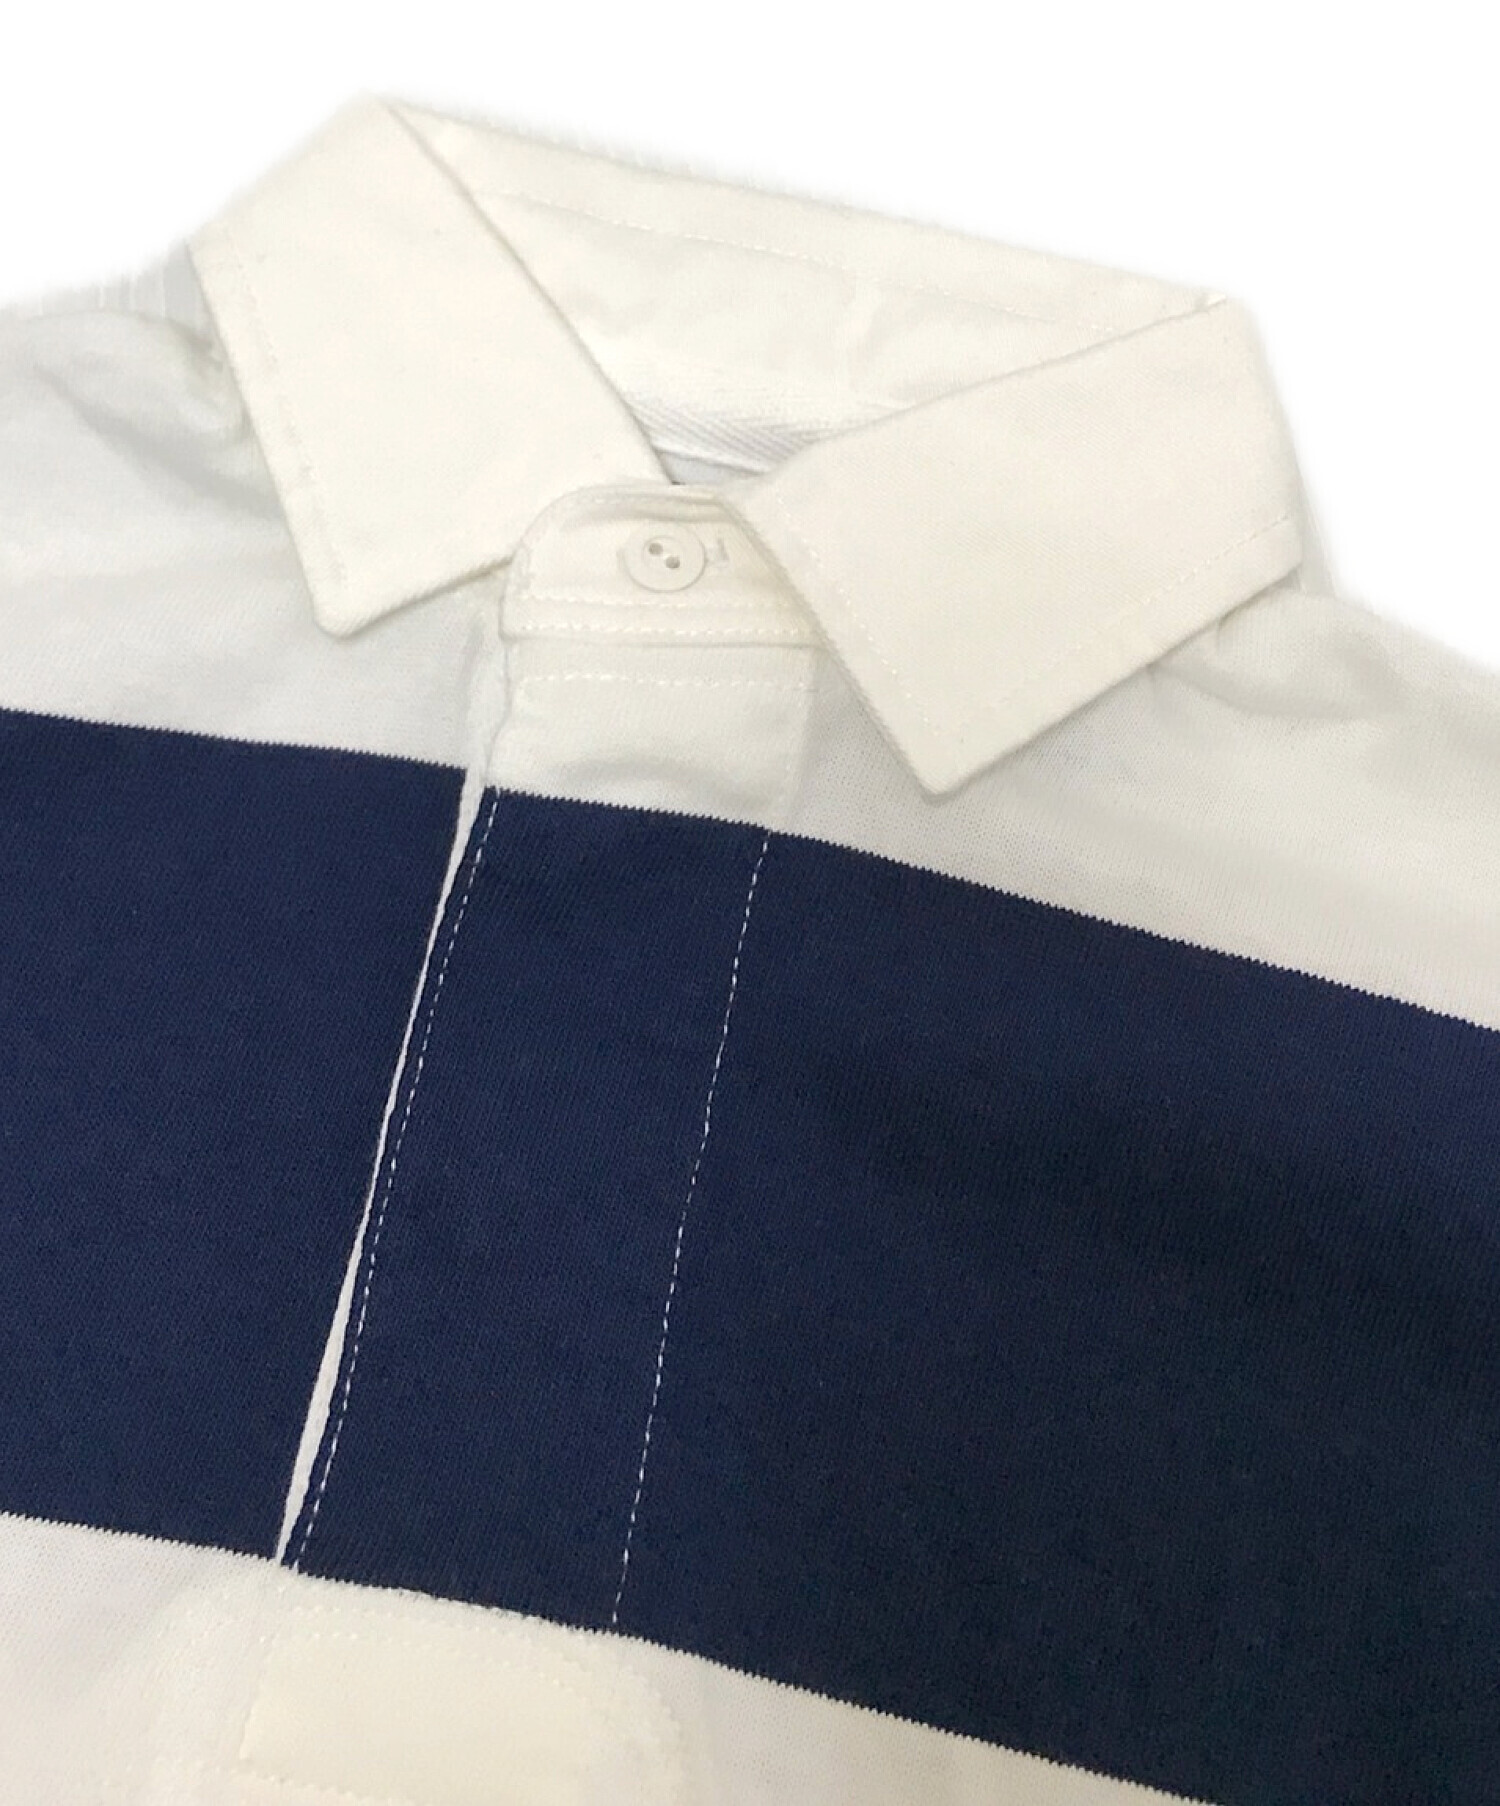 POLO RALPH LAUREN (ポロ・ラルフローレン) ラガーシャツ ホワイト×ネイビー サイズ:XS 未使用品